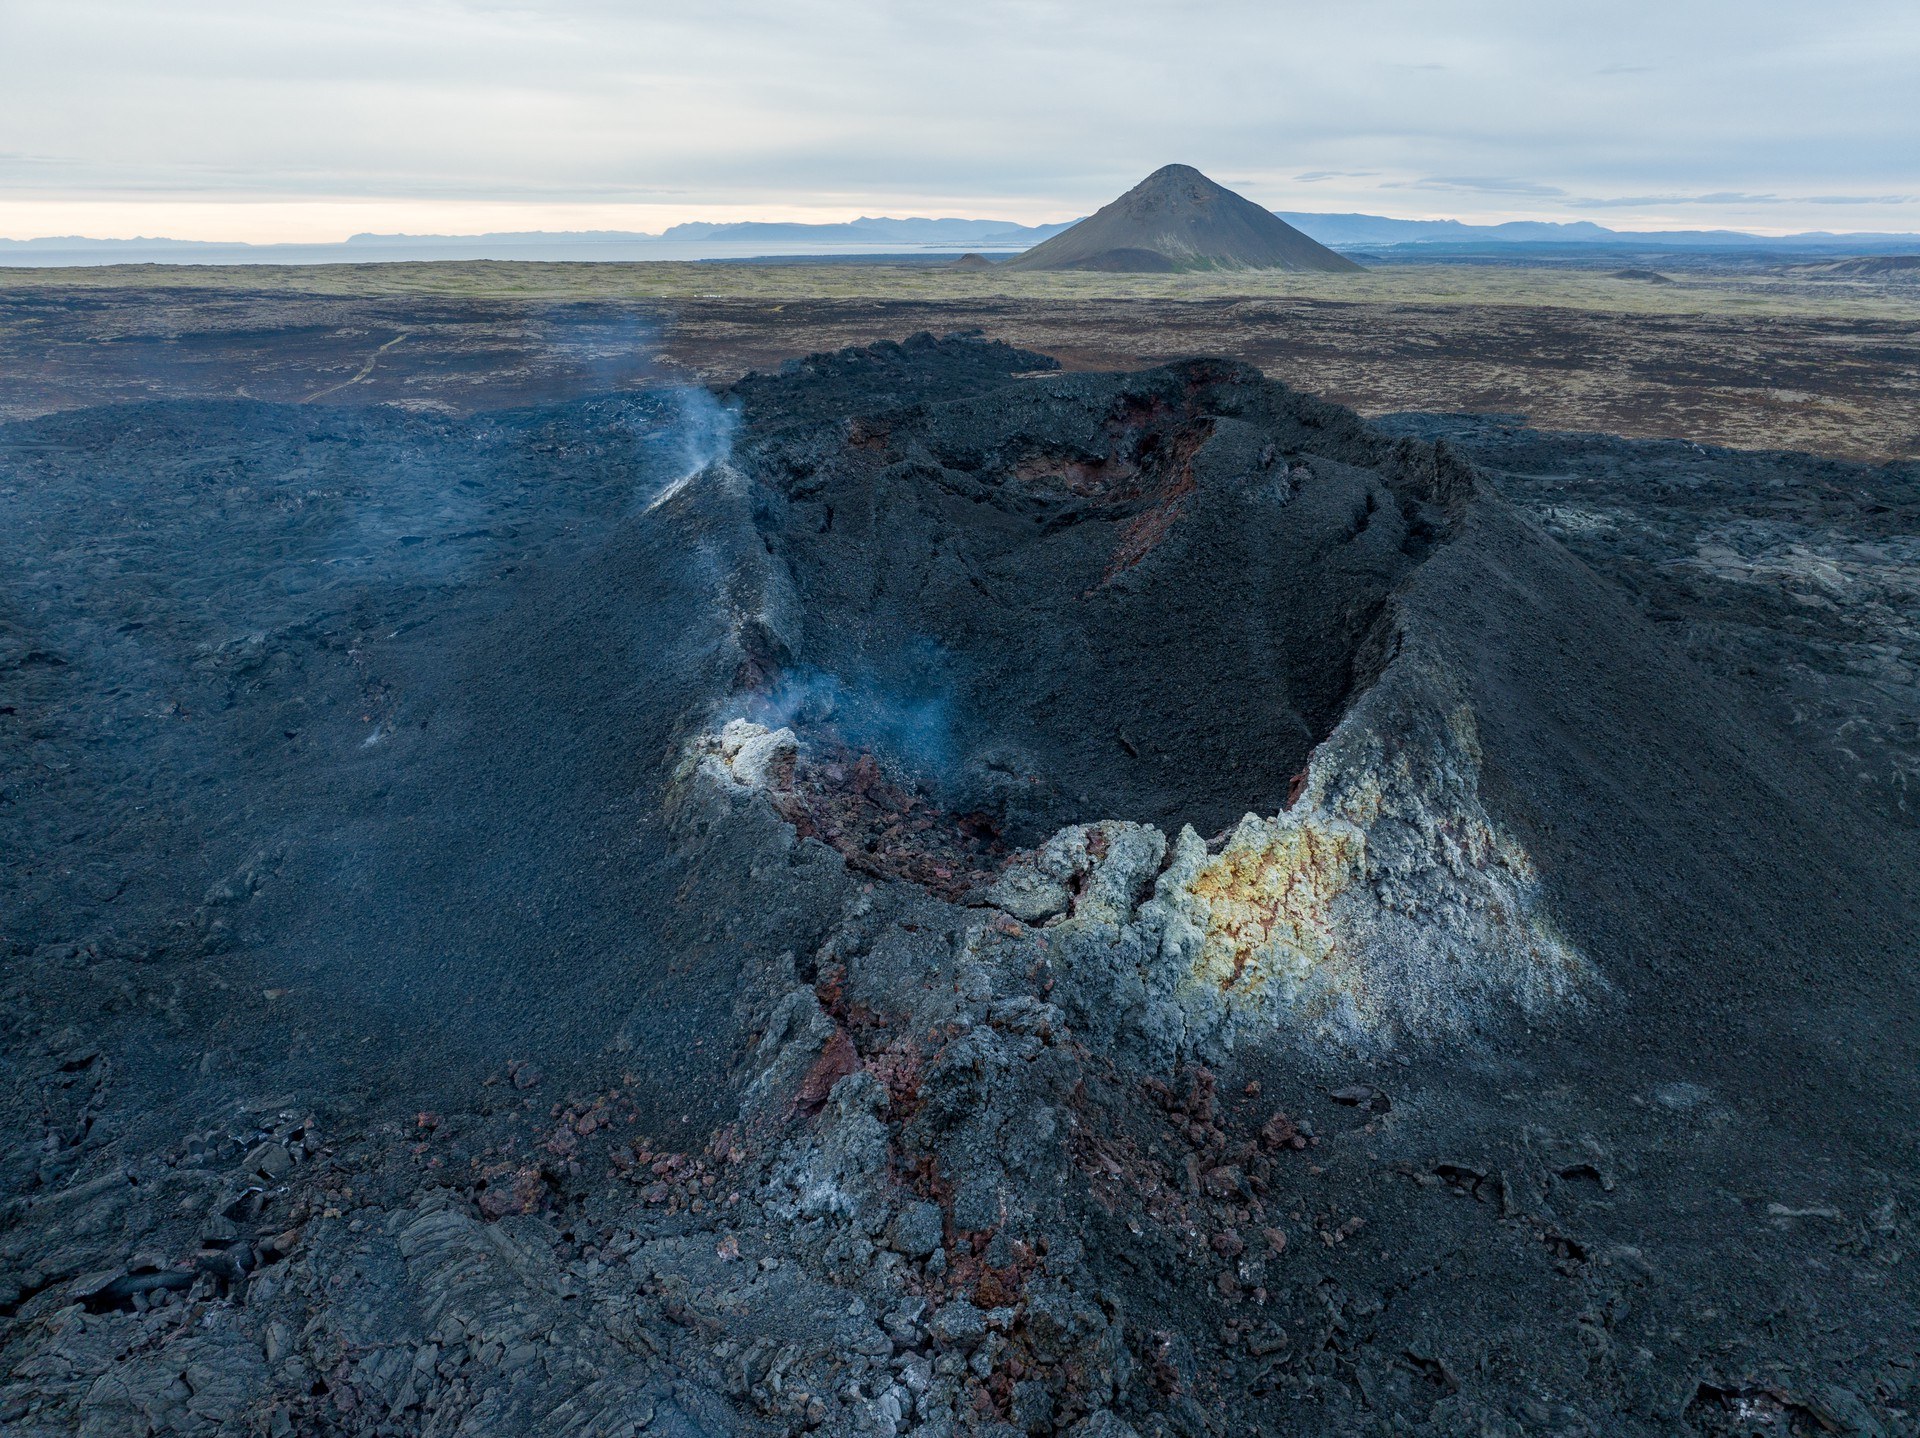 Das Bild zeigt den kleinen Krater des jüngsten Ausbruchs des Litli-Hrútur auf der Halbinsel Reykjanes.